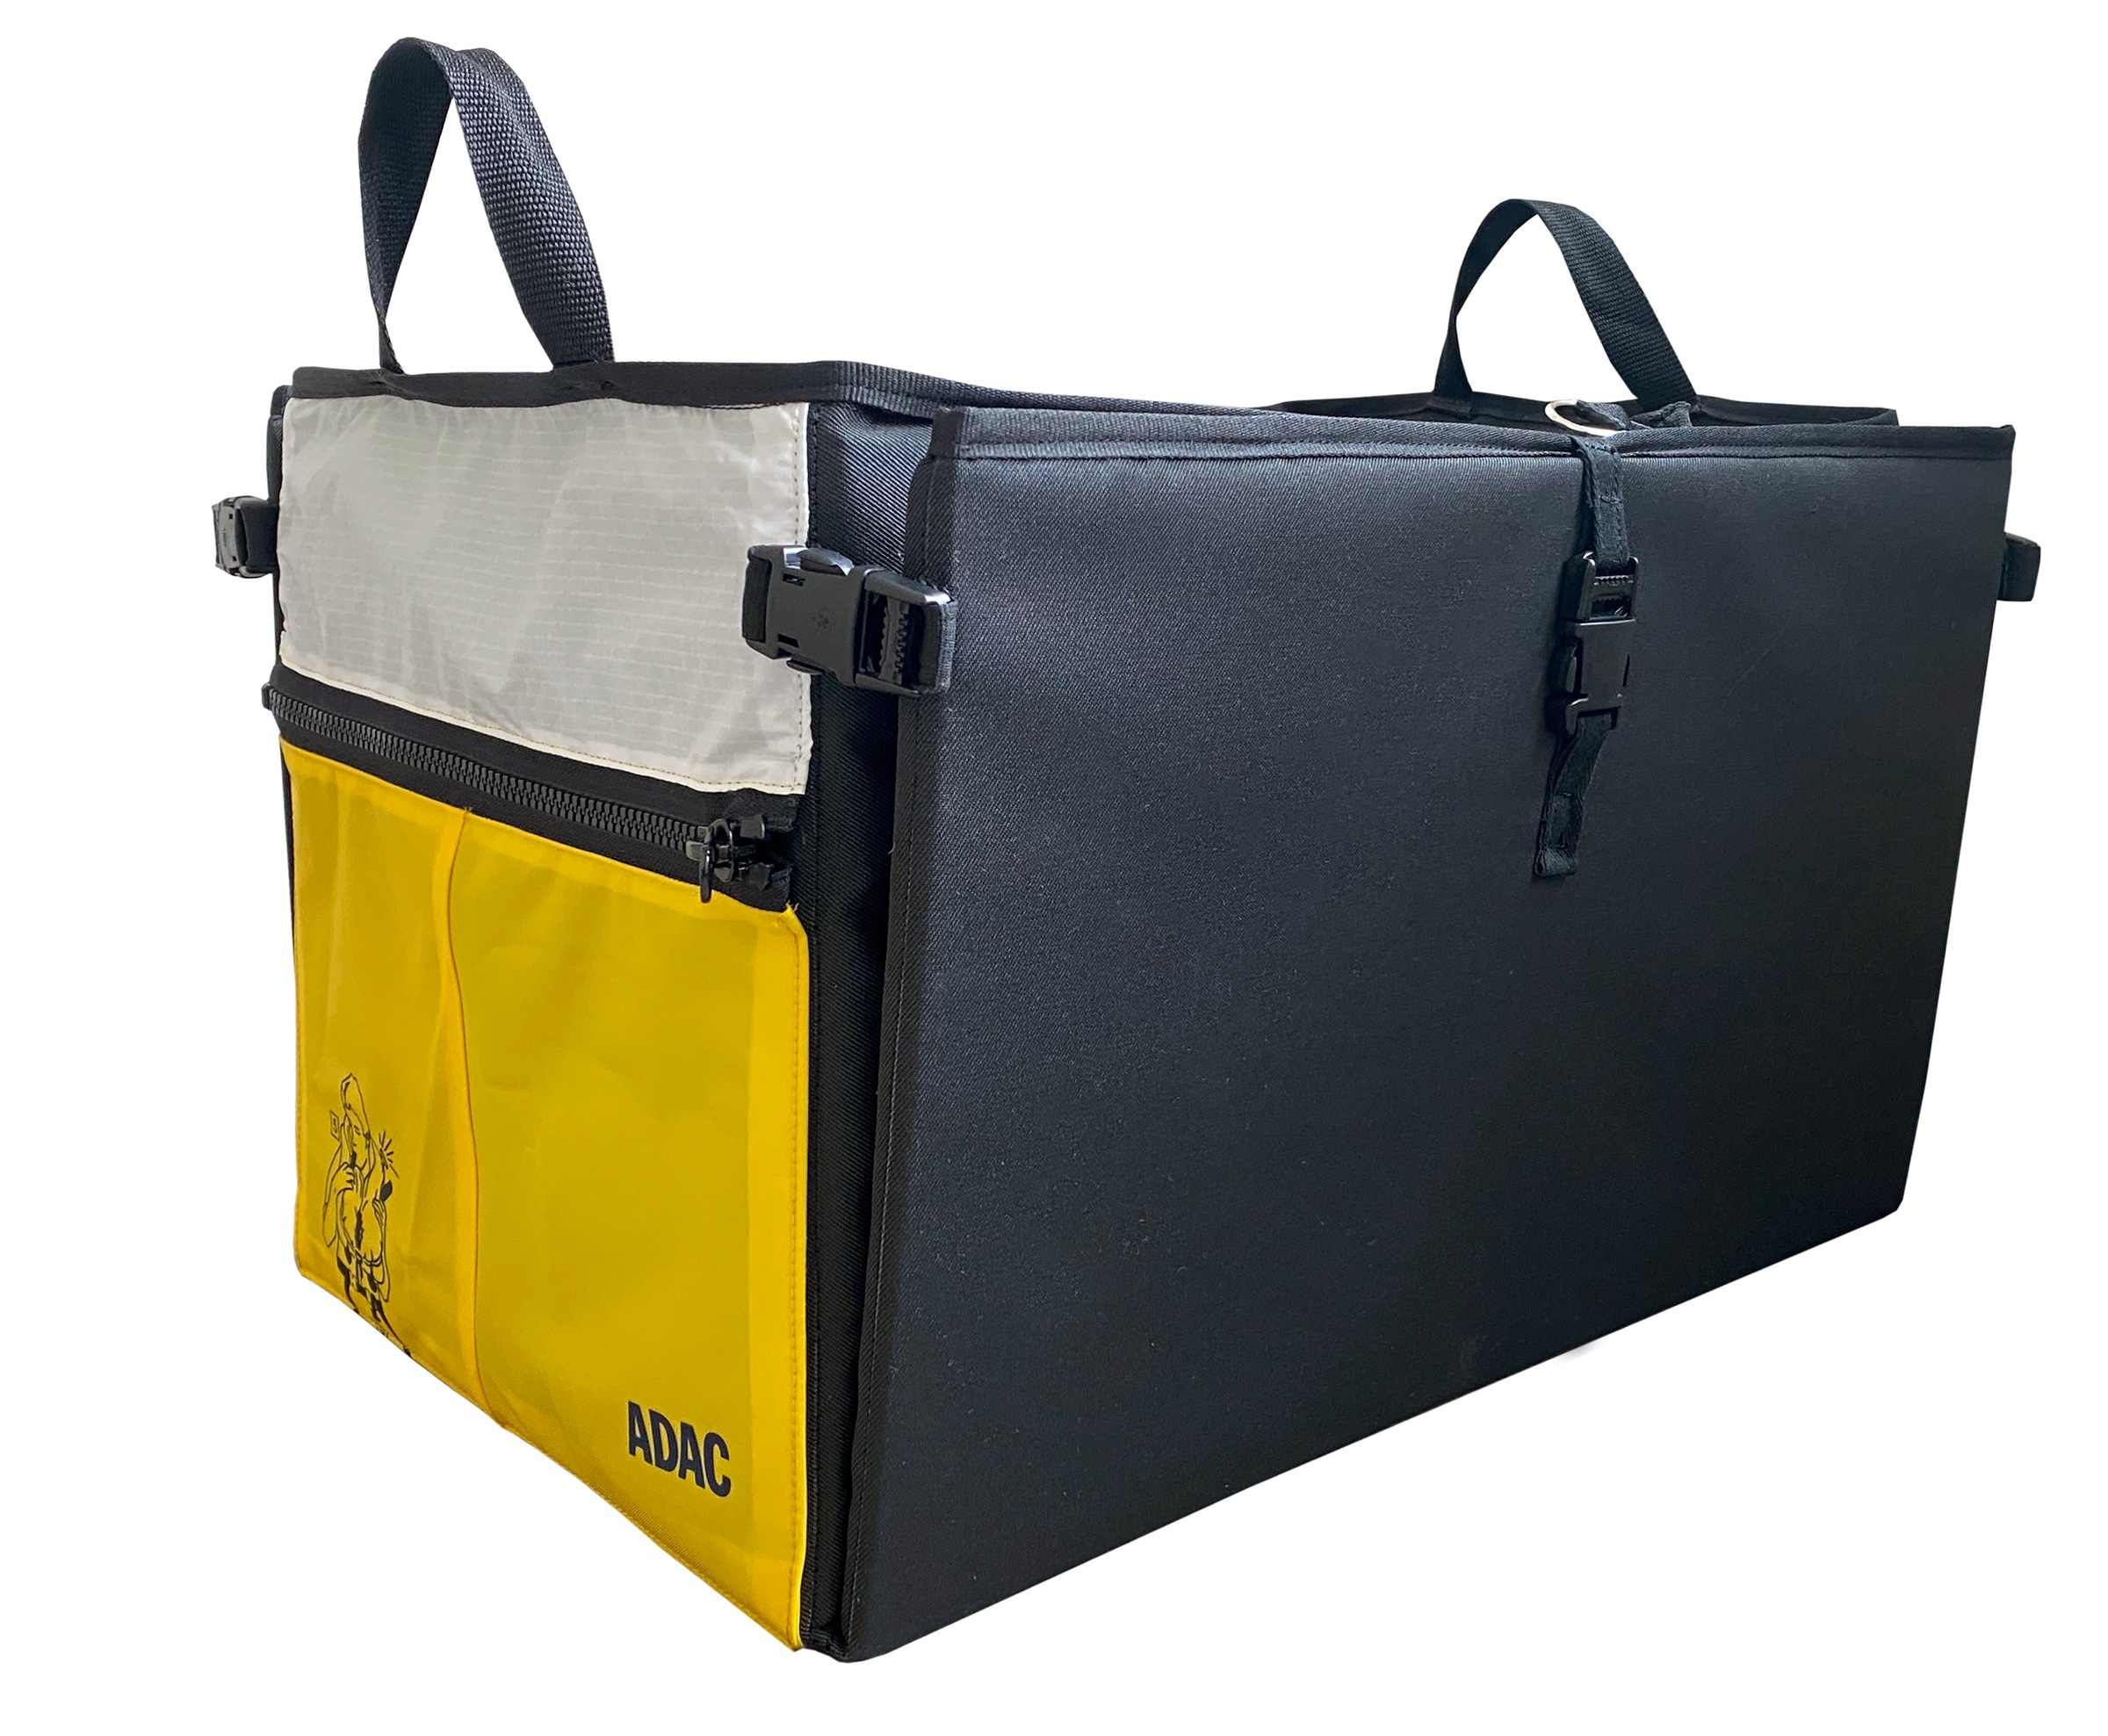 Bag to Life Aufbewahrungstasche »ADAC Kofferraum-Box«, im praktischen Design